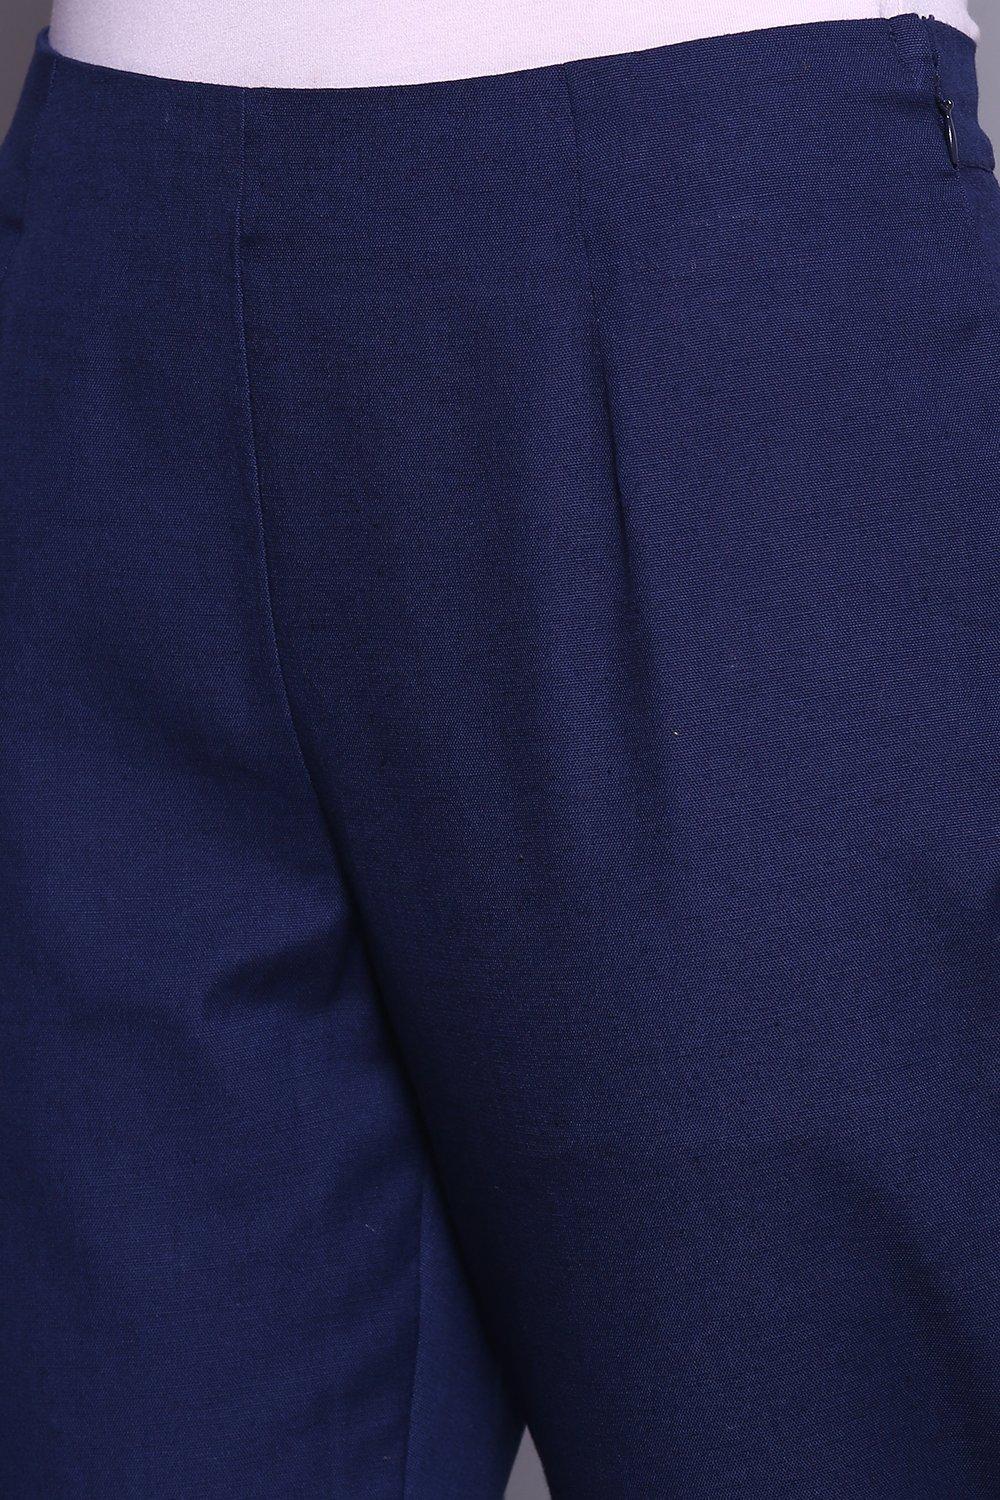 NBD Tara Boucle Knit Pant in Scuba Blue